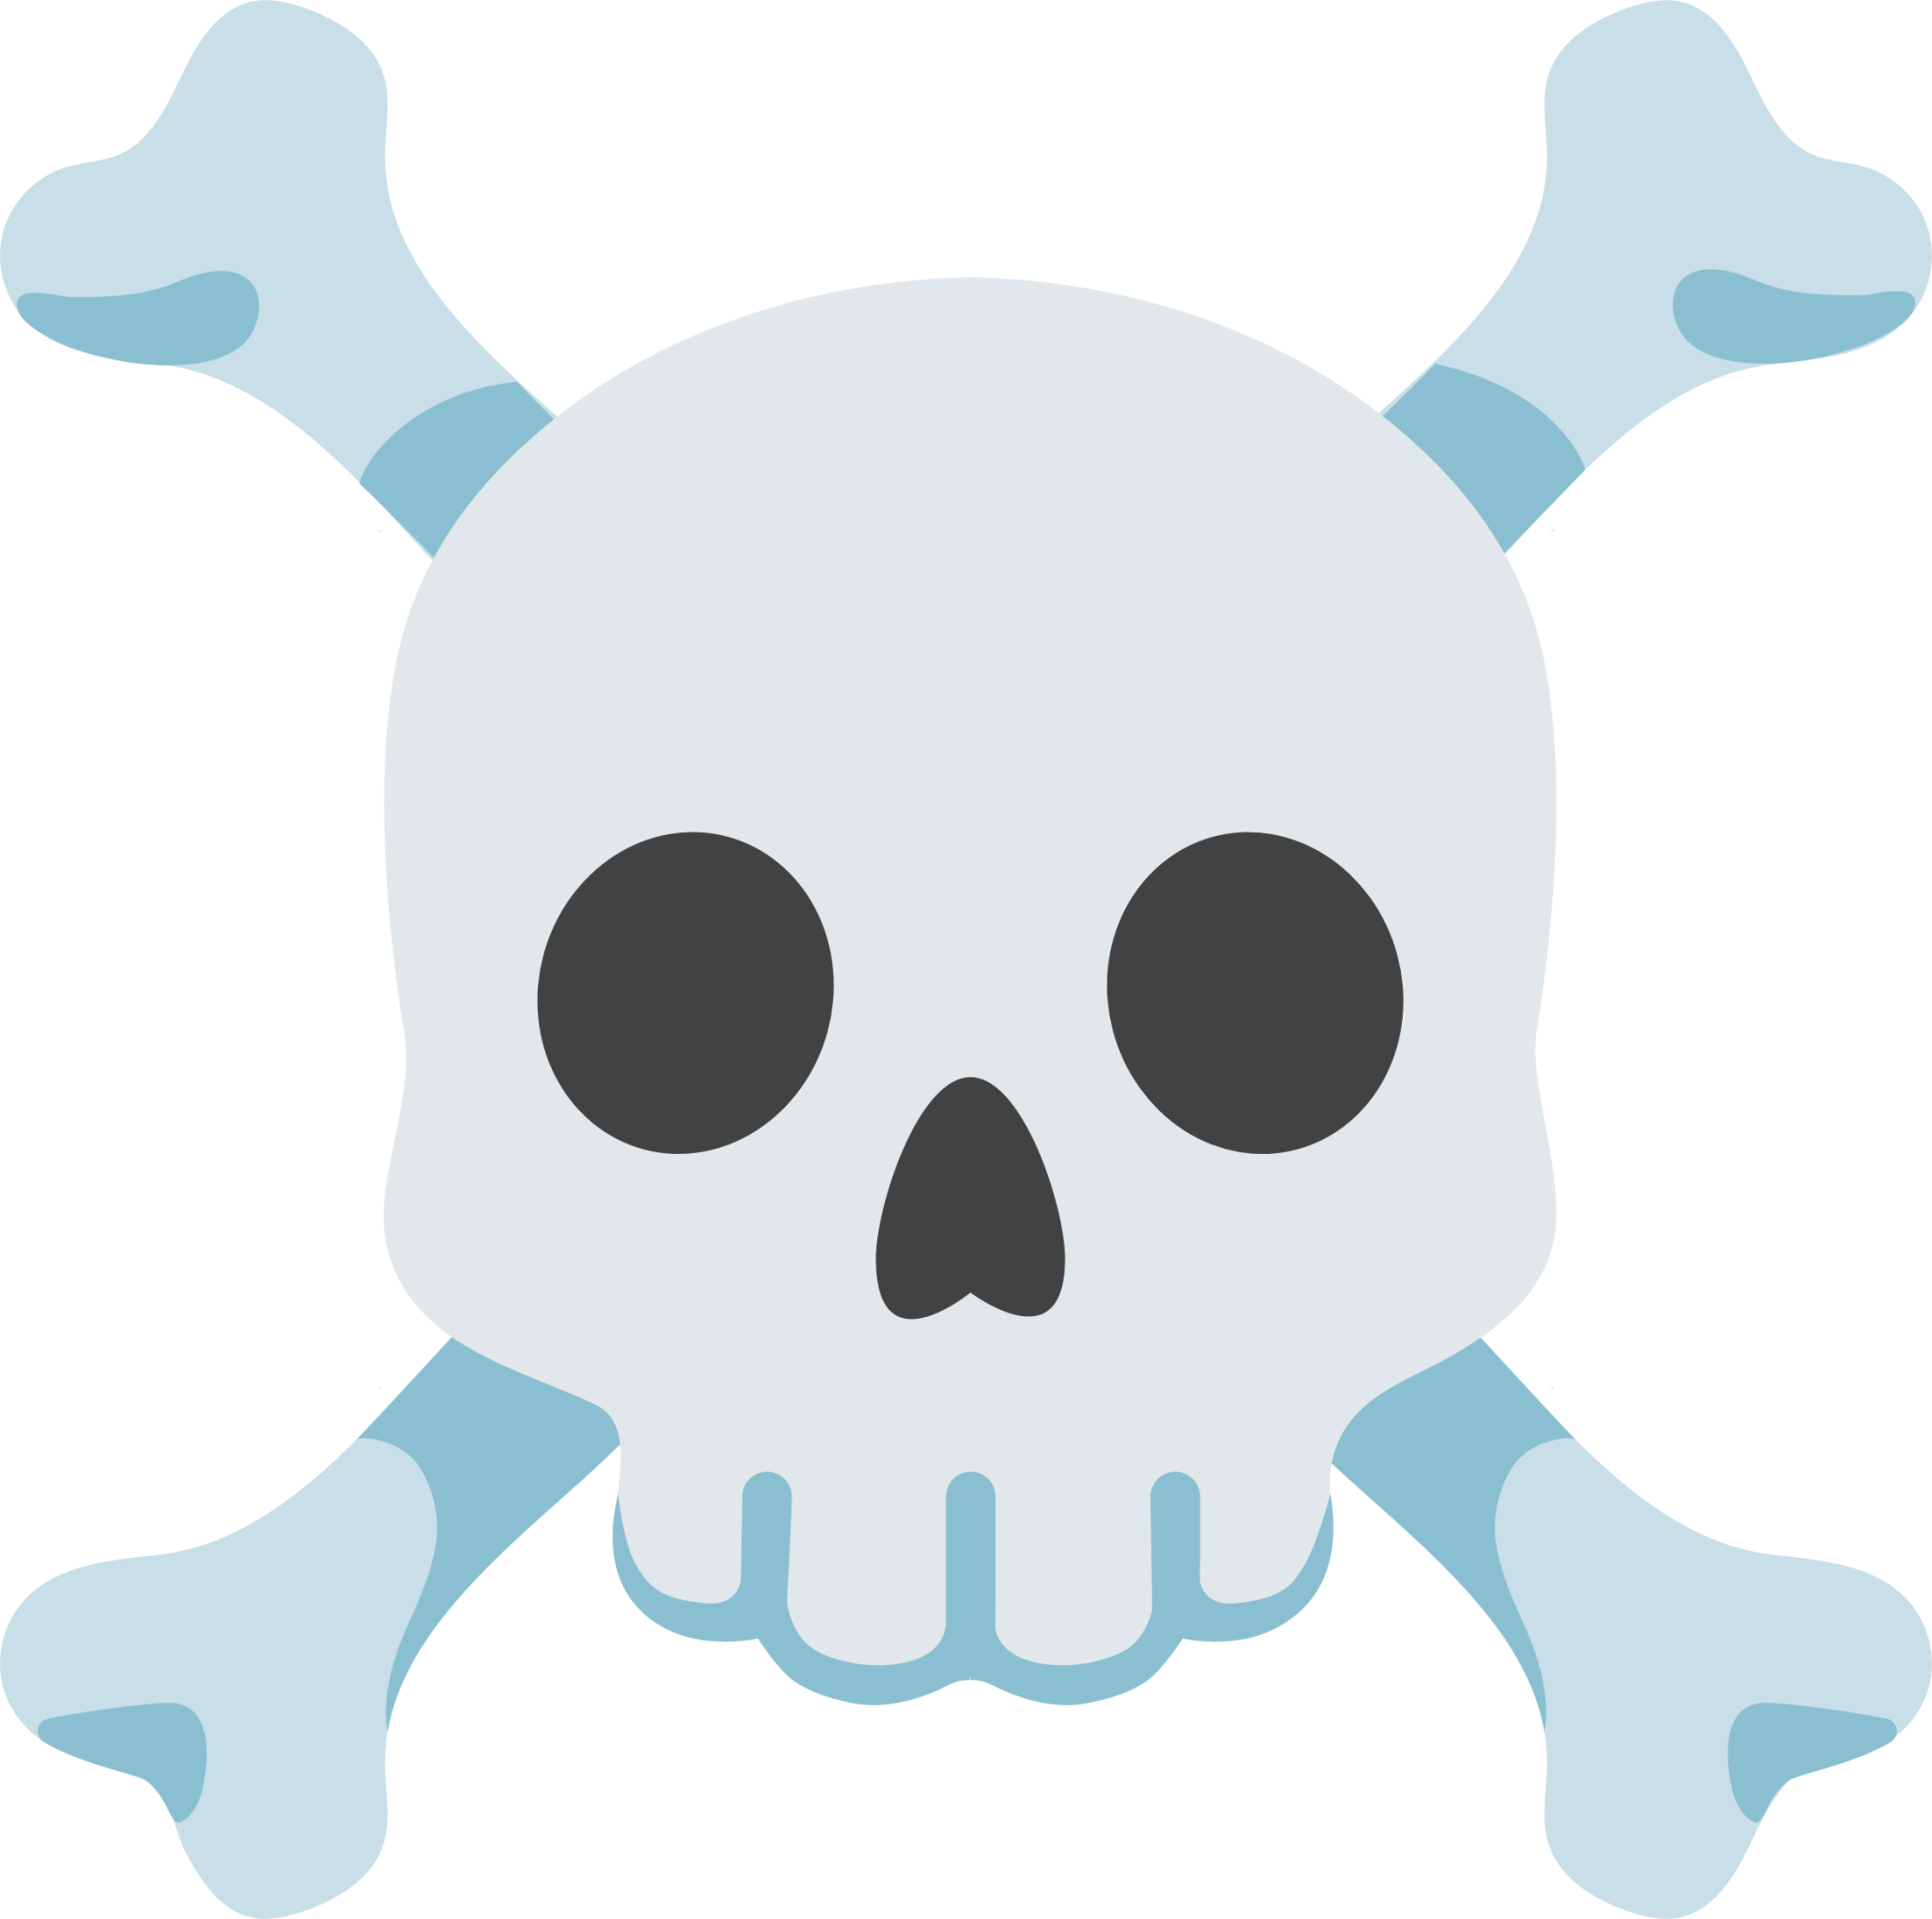 ☠️ Skull And Crossbones Emoji